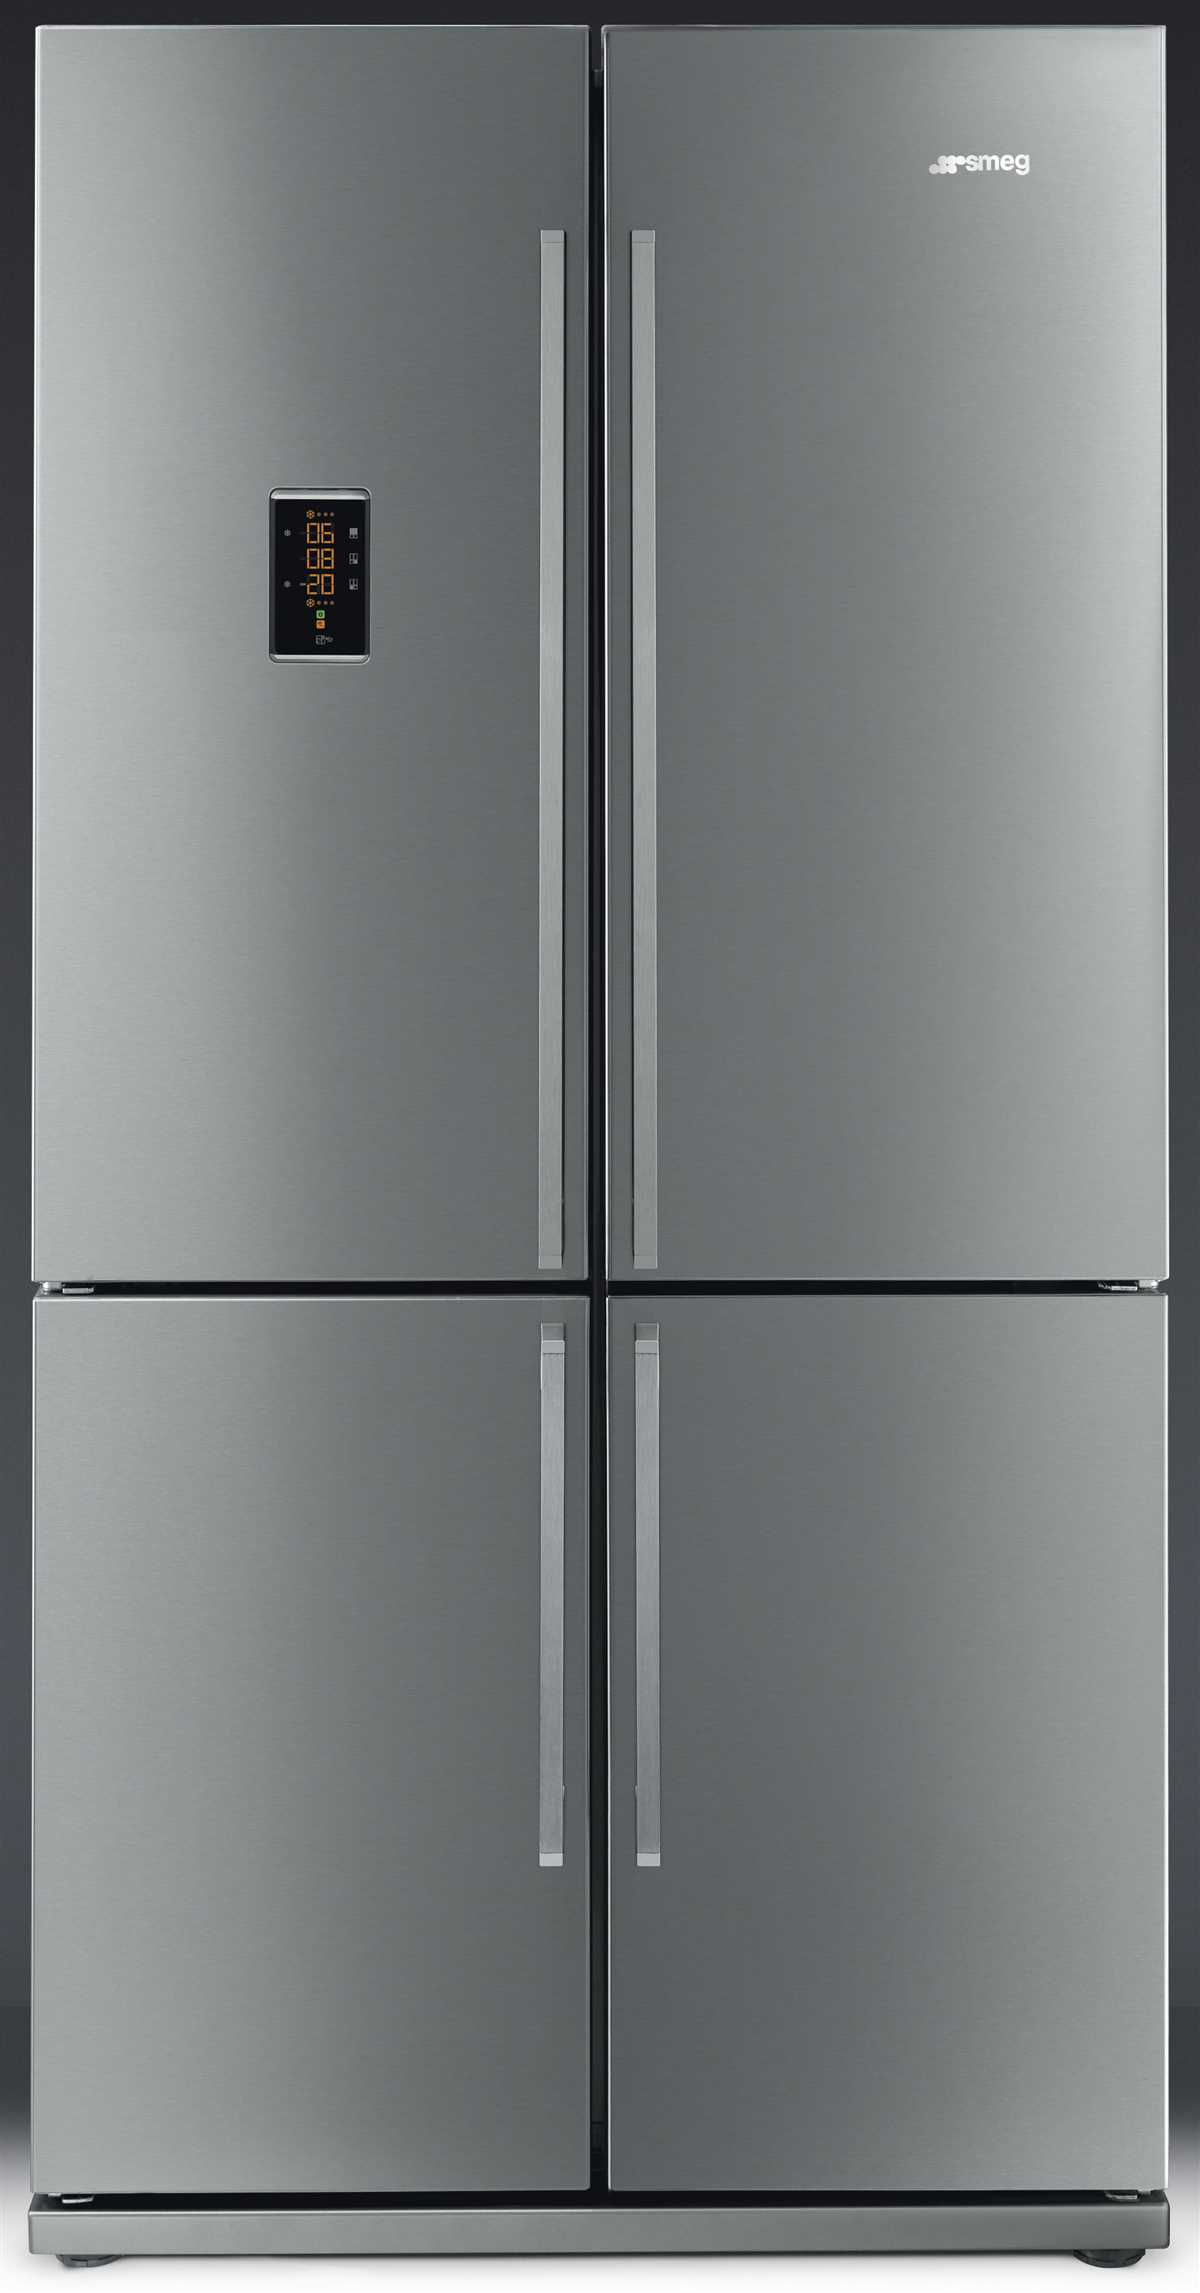 Промышленные холодильники: что нужно знать перед покупкой